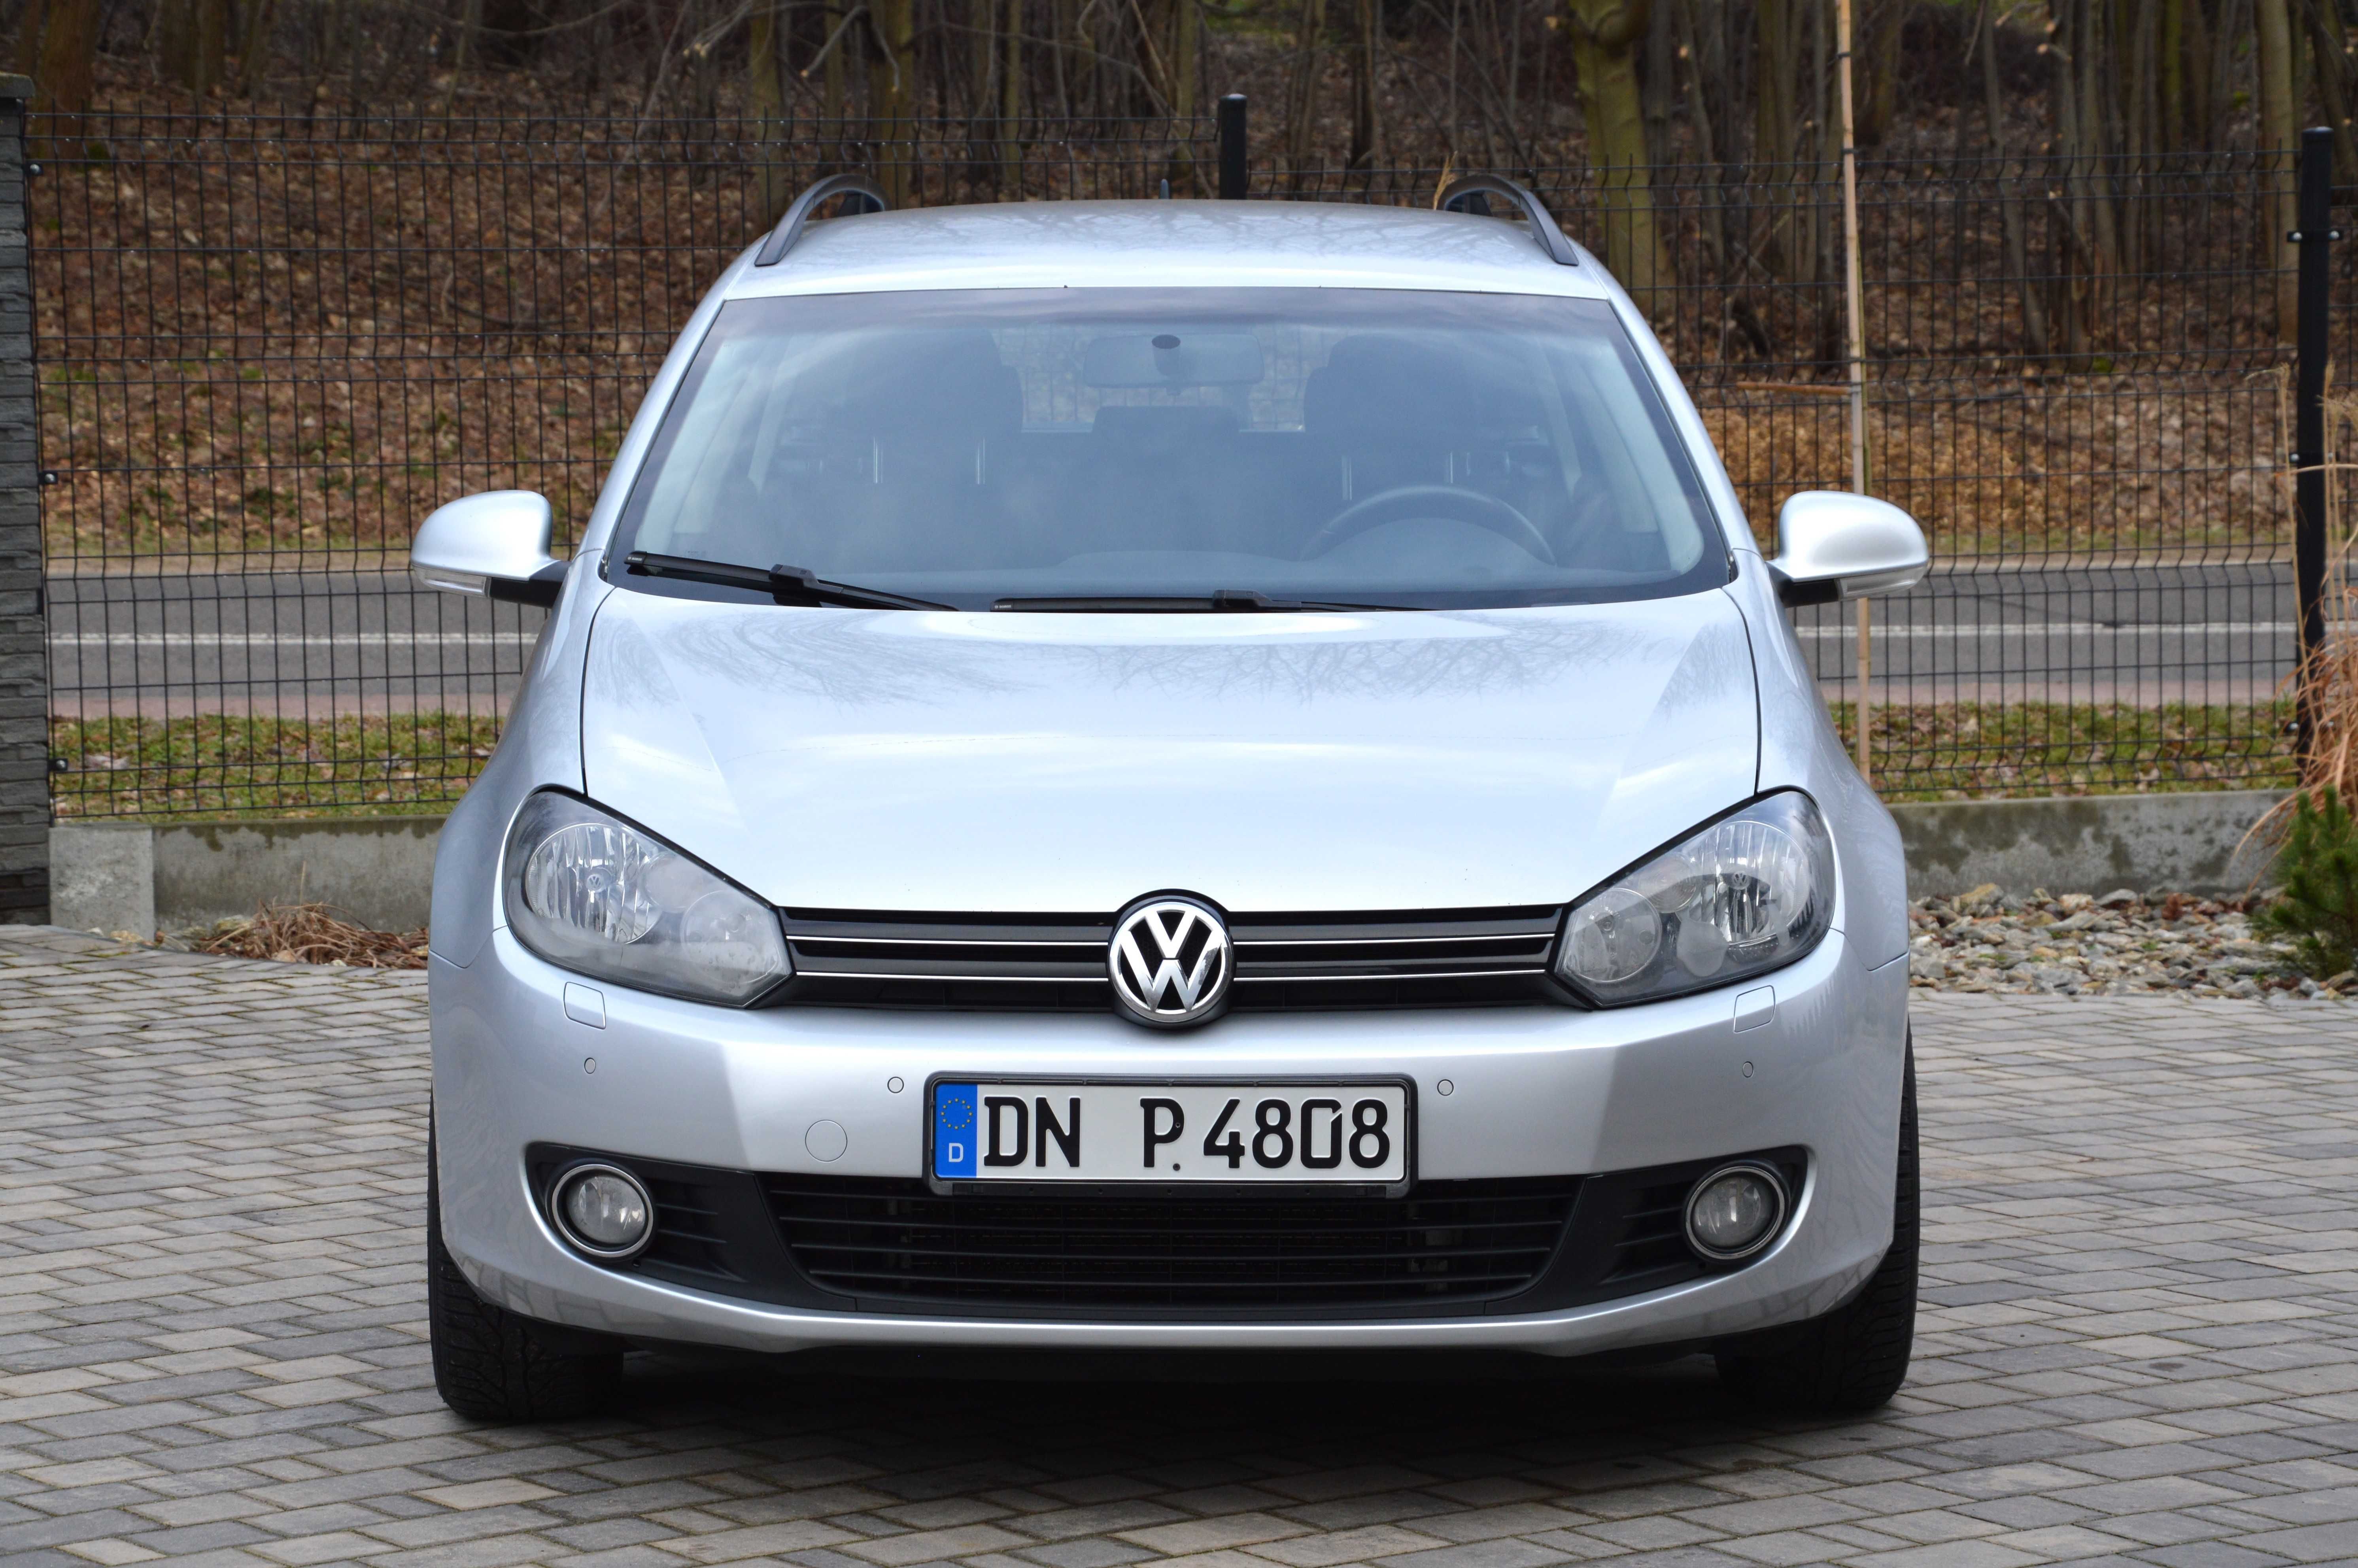 VW Golf 6 _Klimatronic_grzane fotele_parktronic_